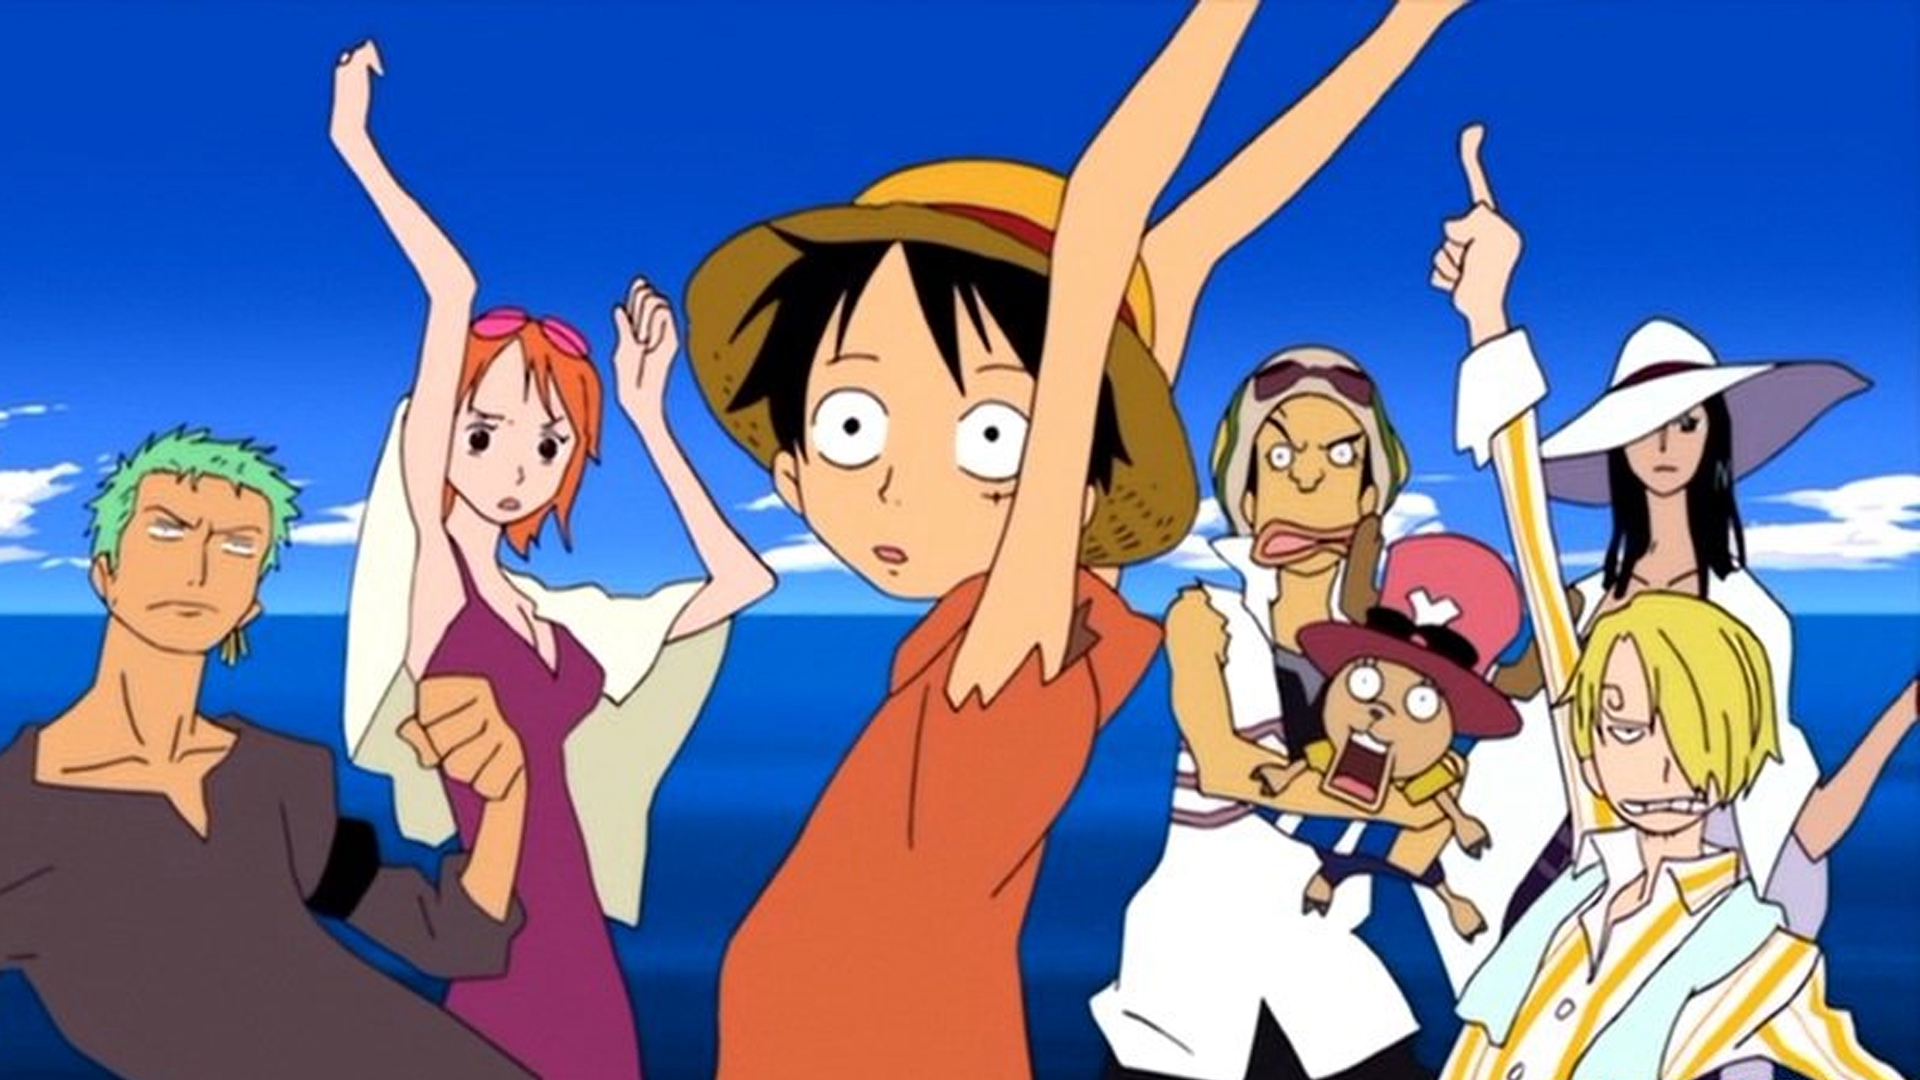 Xem Phim One Piece: Episode of Alabaster - Sabaku no Ojou to Kaizoku Tachi, One Piece: Episode of Alabaster - Sabaku no Ojou to Kaizoku Tachi 2007